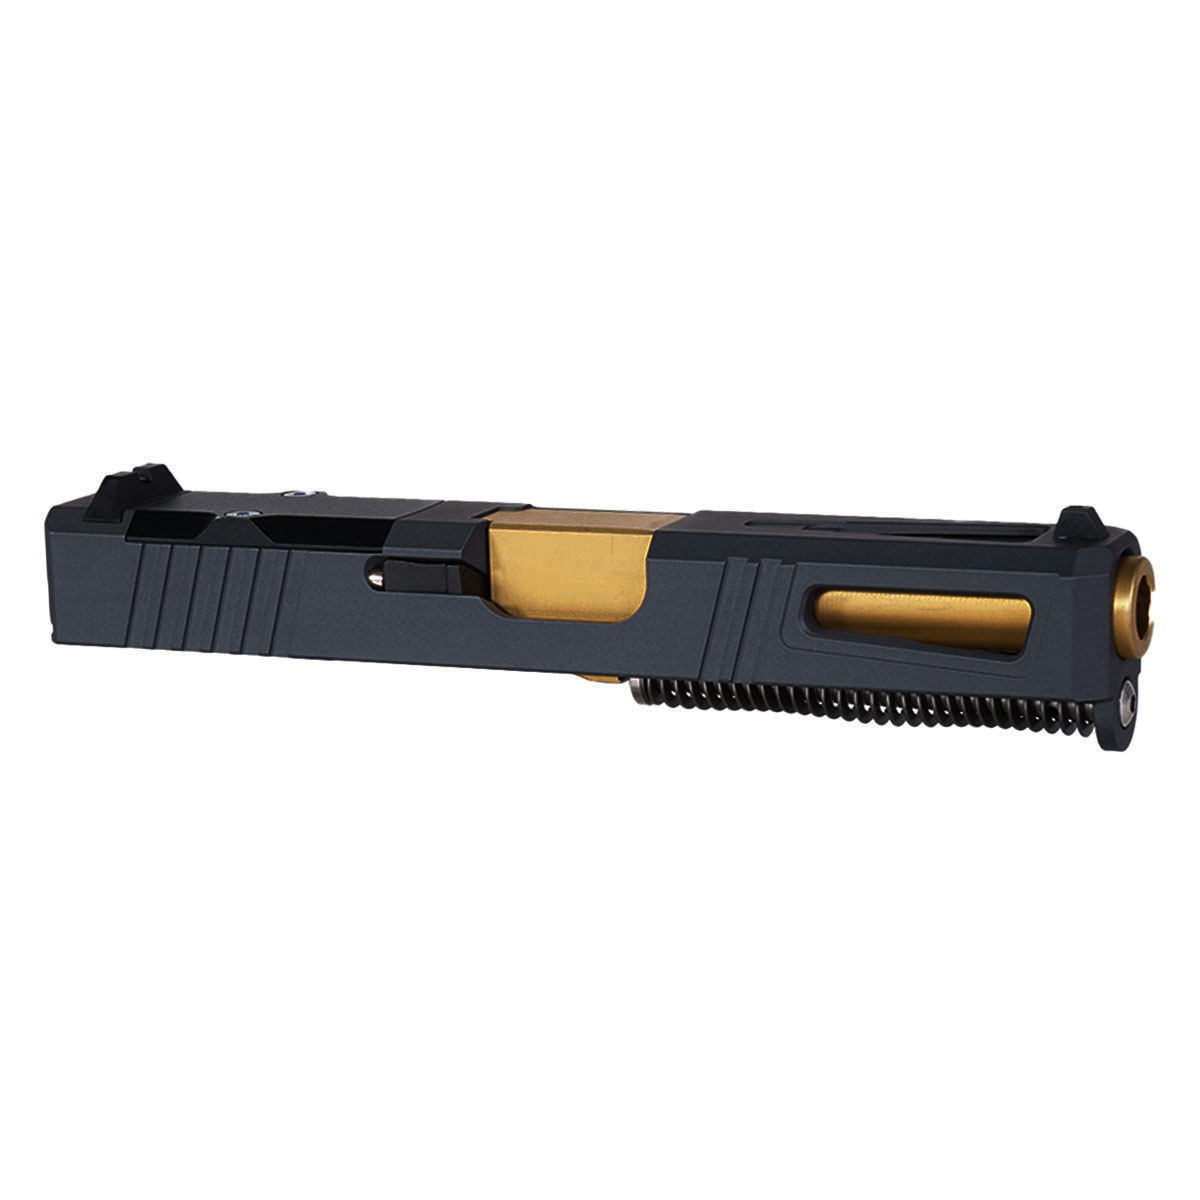 DTT 'The Juno' 9mm Complete Slide Kit - Glock 19 Gen 1-3 Compatible